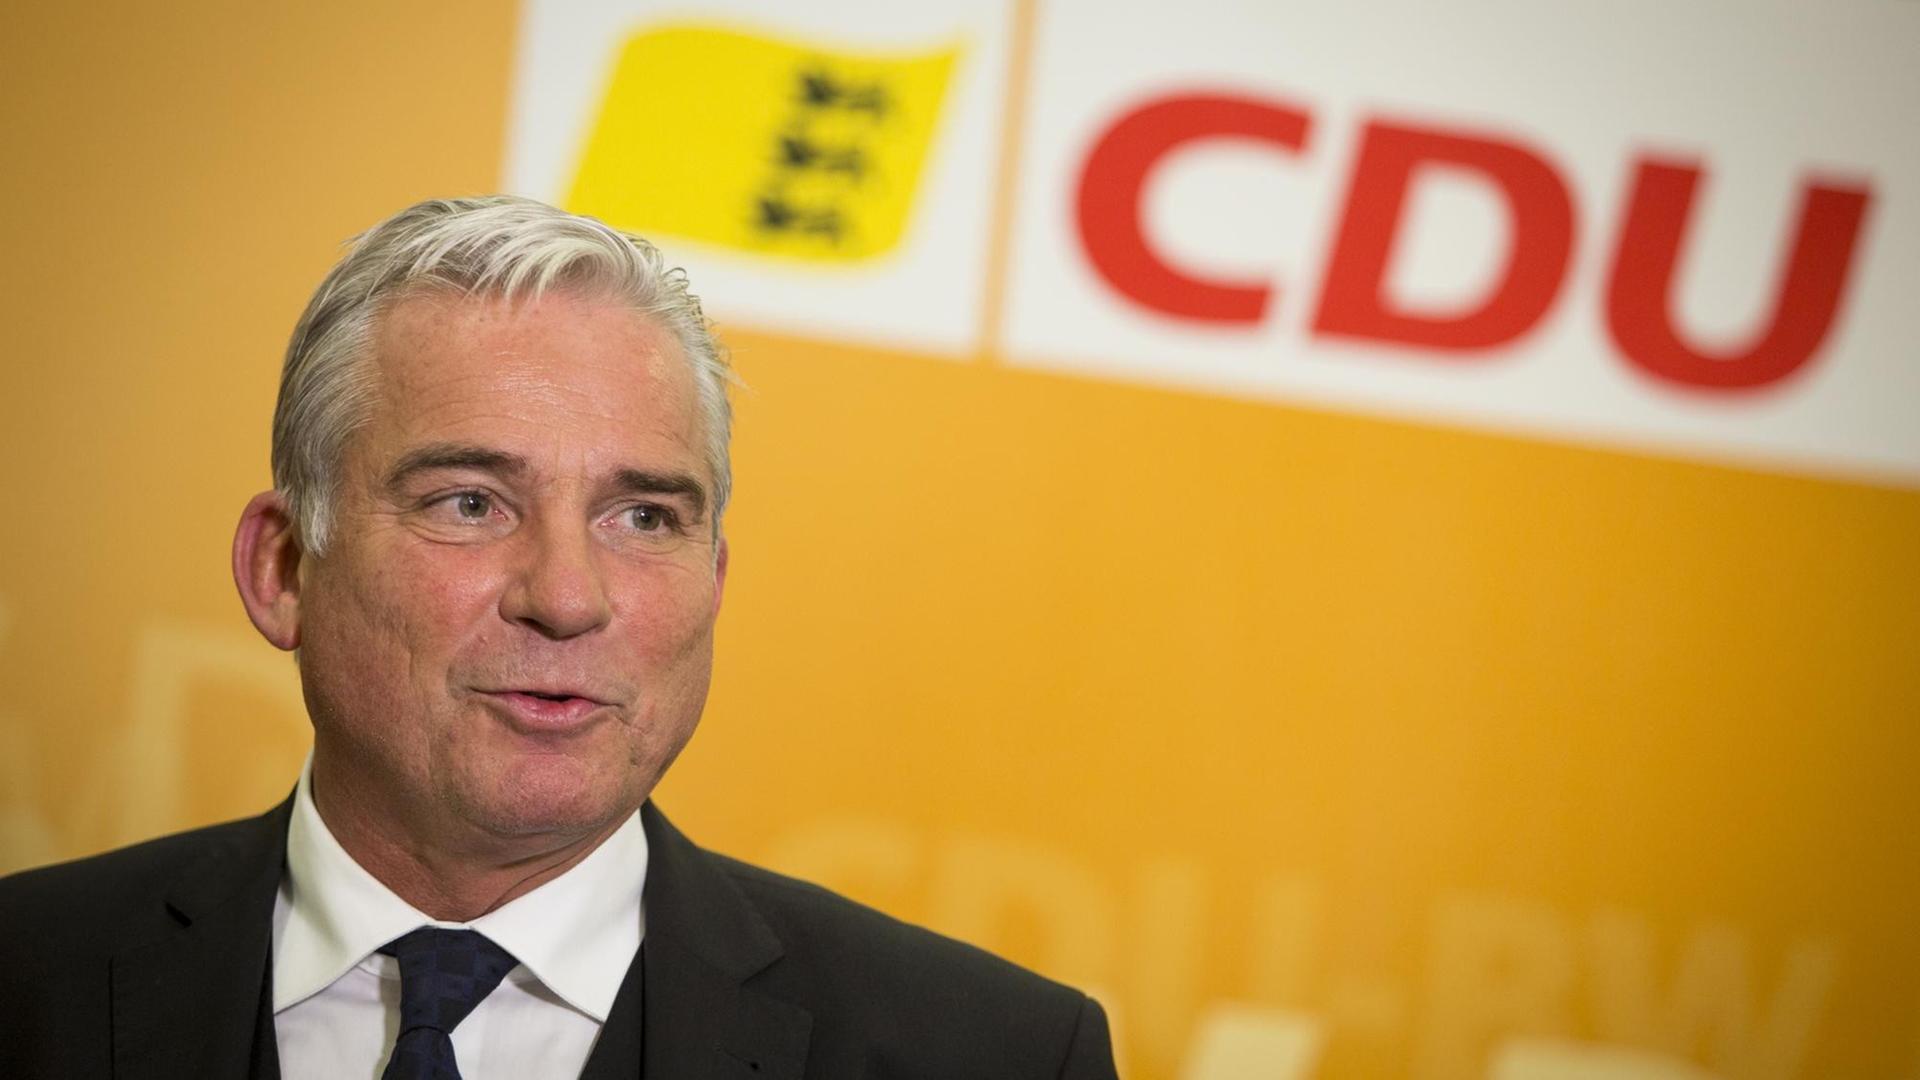 Der Landesvorsitzende der CDU in Baden-Württemberg, Thomas Strobl, am 30.03.2016 in Stuttgart.